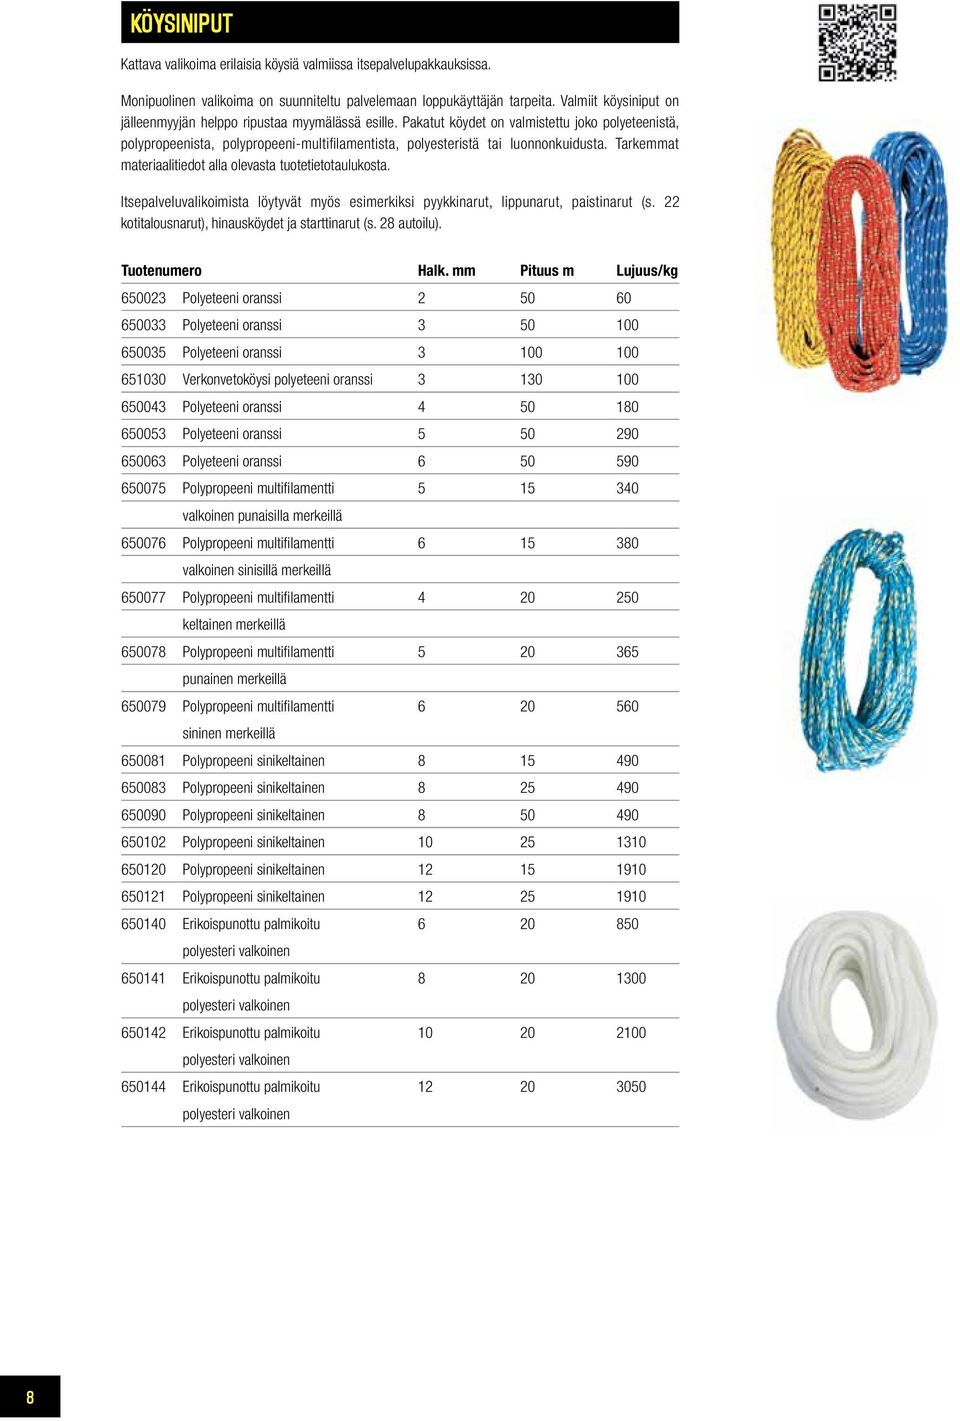 Pakatut köydet on valmistettu joko polyeteenistä, polypropeenista, polypropeeni-multifi lamentista, polyesteristä tai luonnonkuidusta. Tarkemmat materiaalitiedot alla olevasta tuotetietotaulukosta.